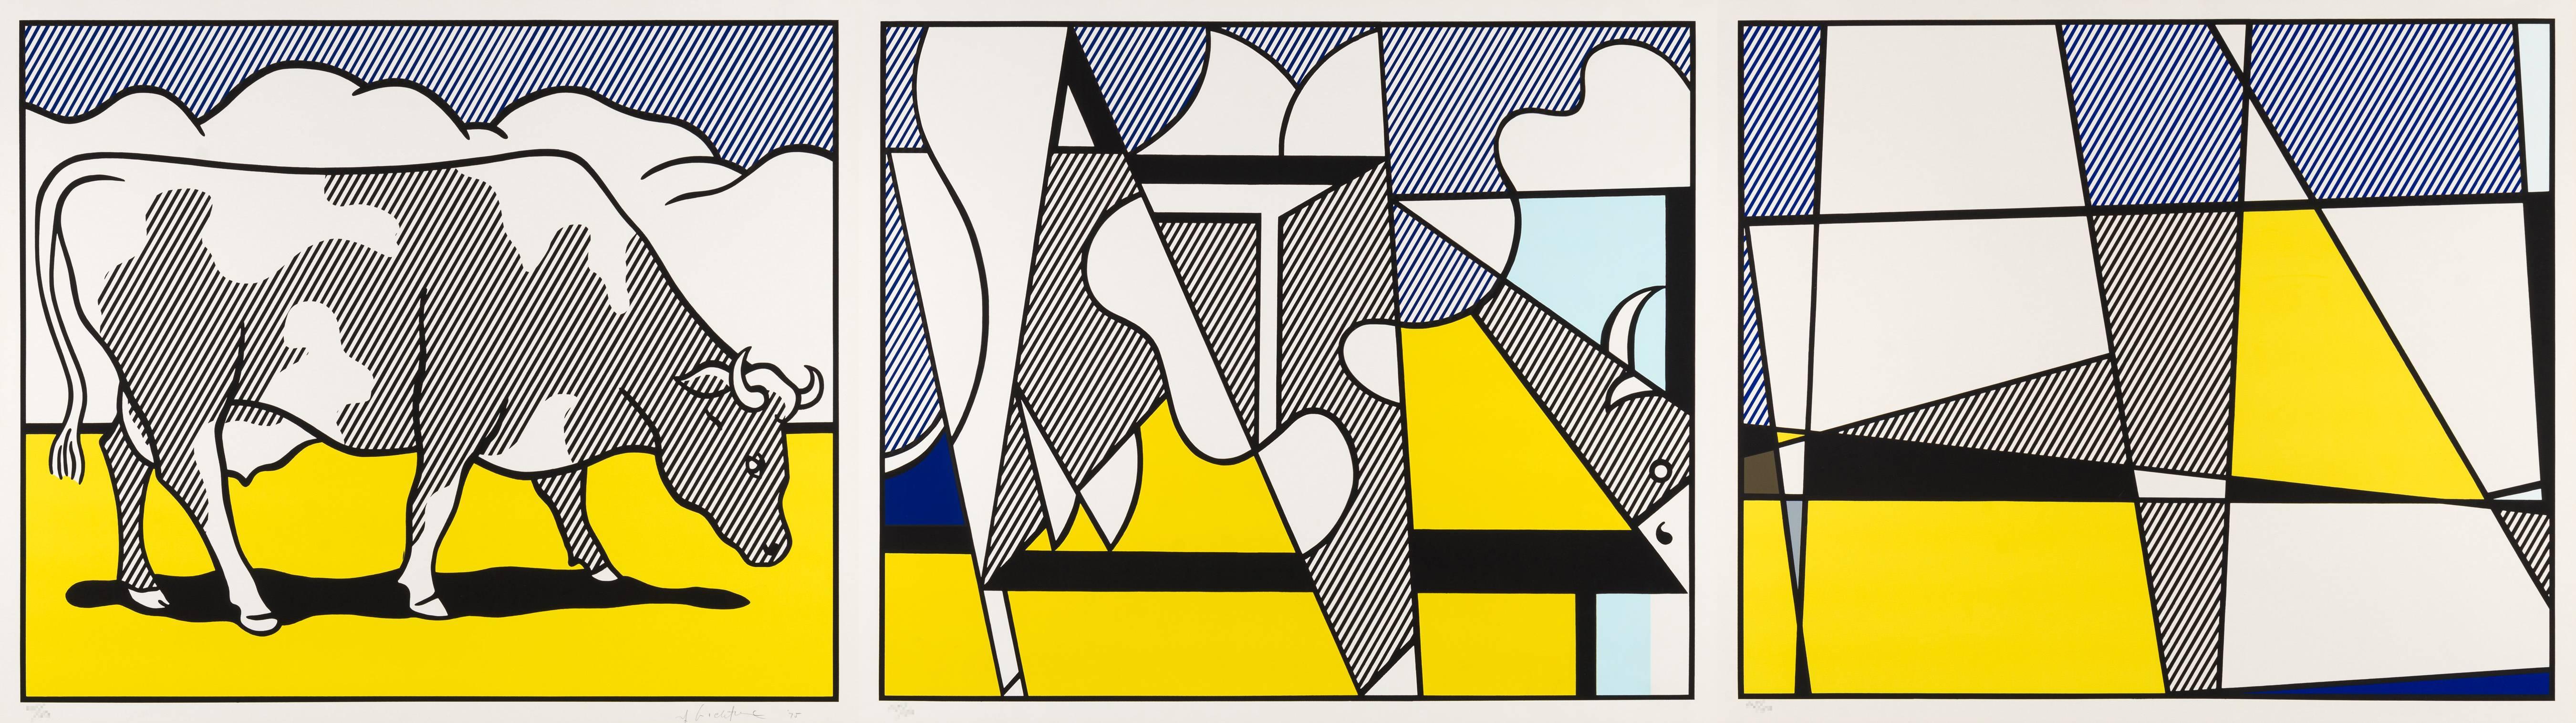 Roy Lichtenstein Animal Print - Cow Going Abstract (Triptych)